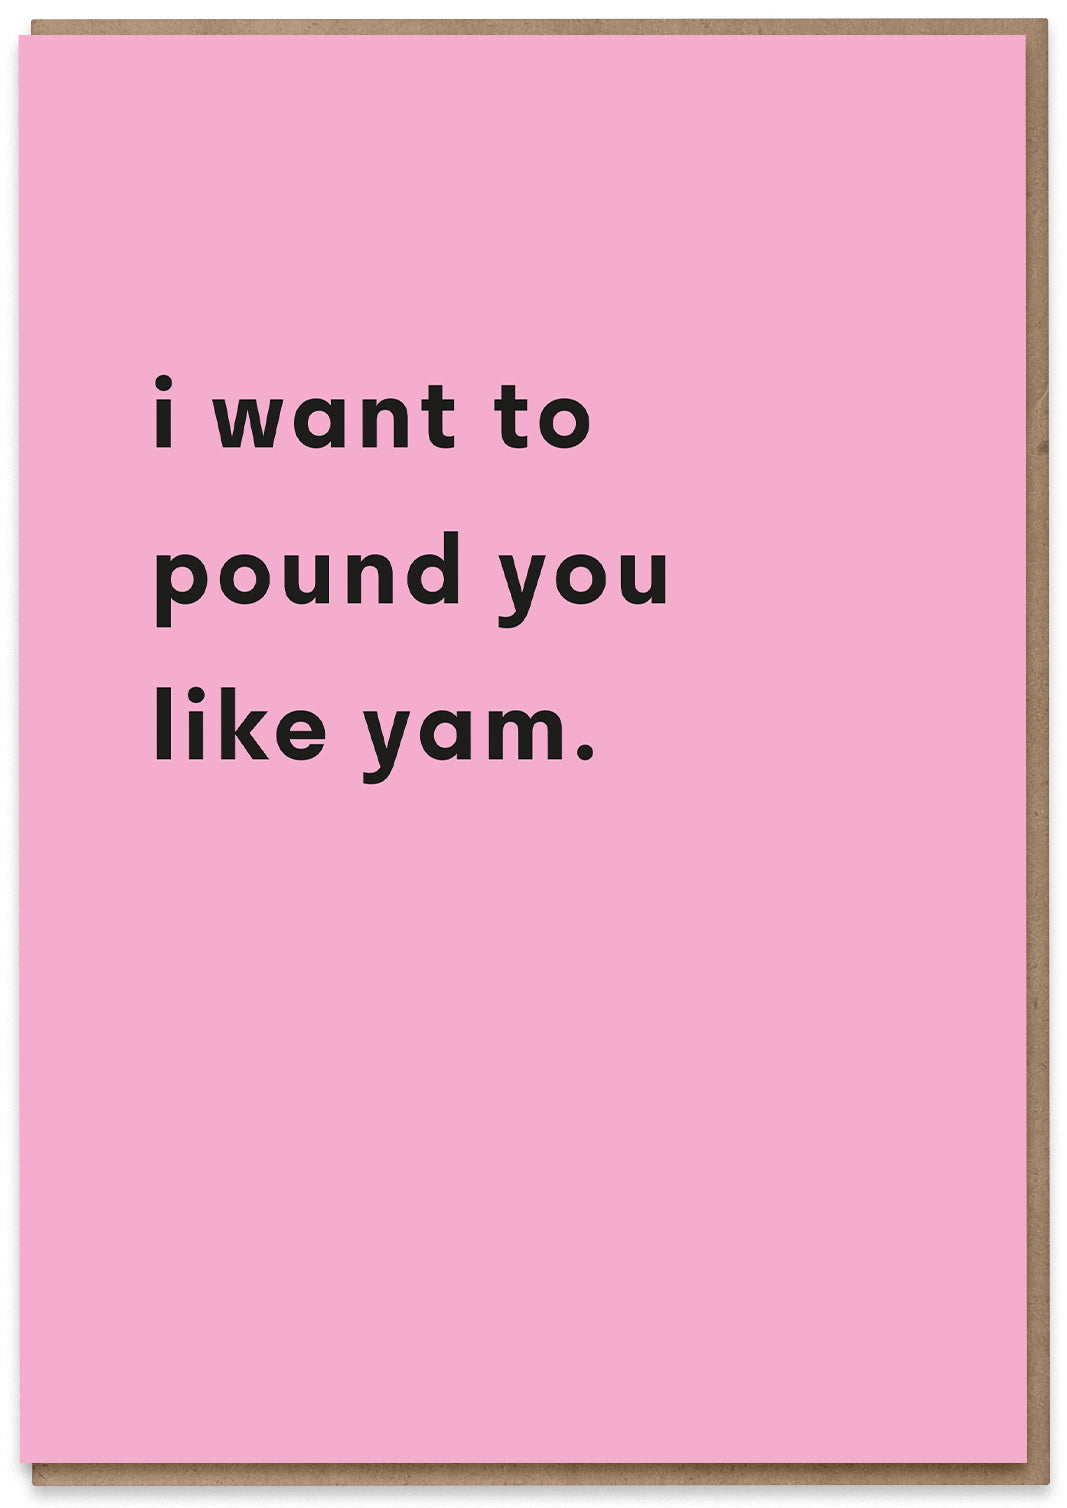 Pound Like Yam